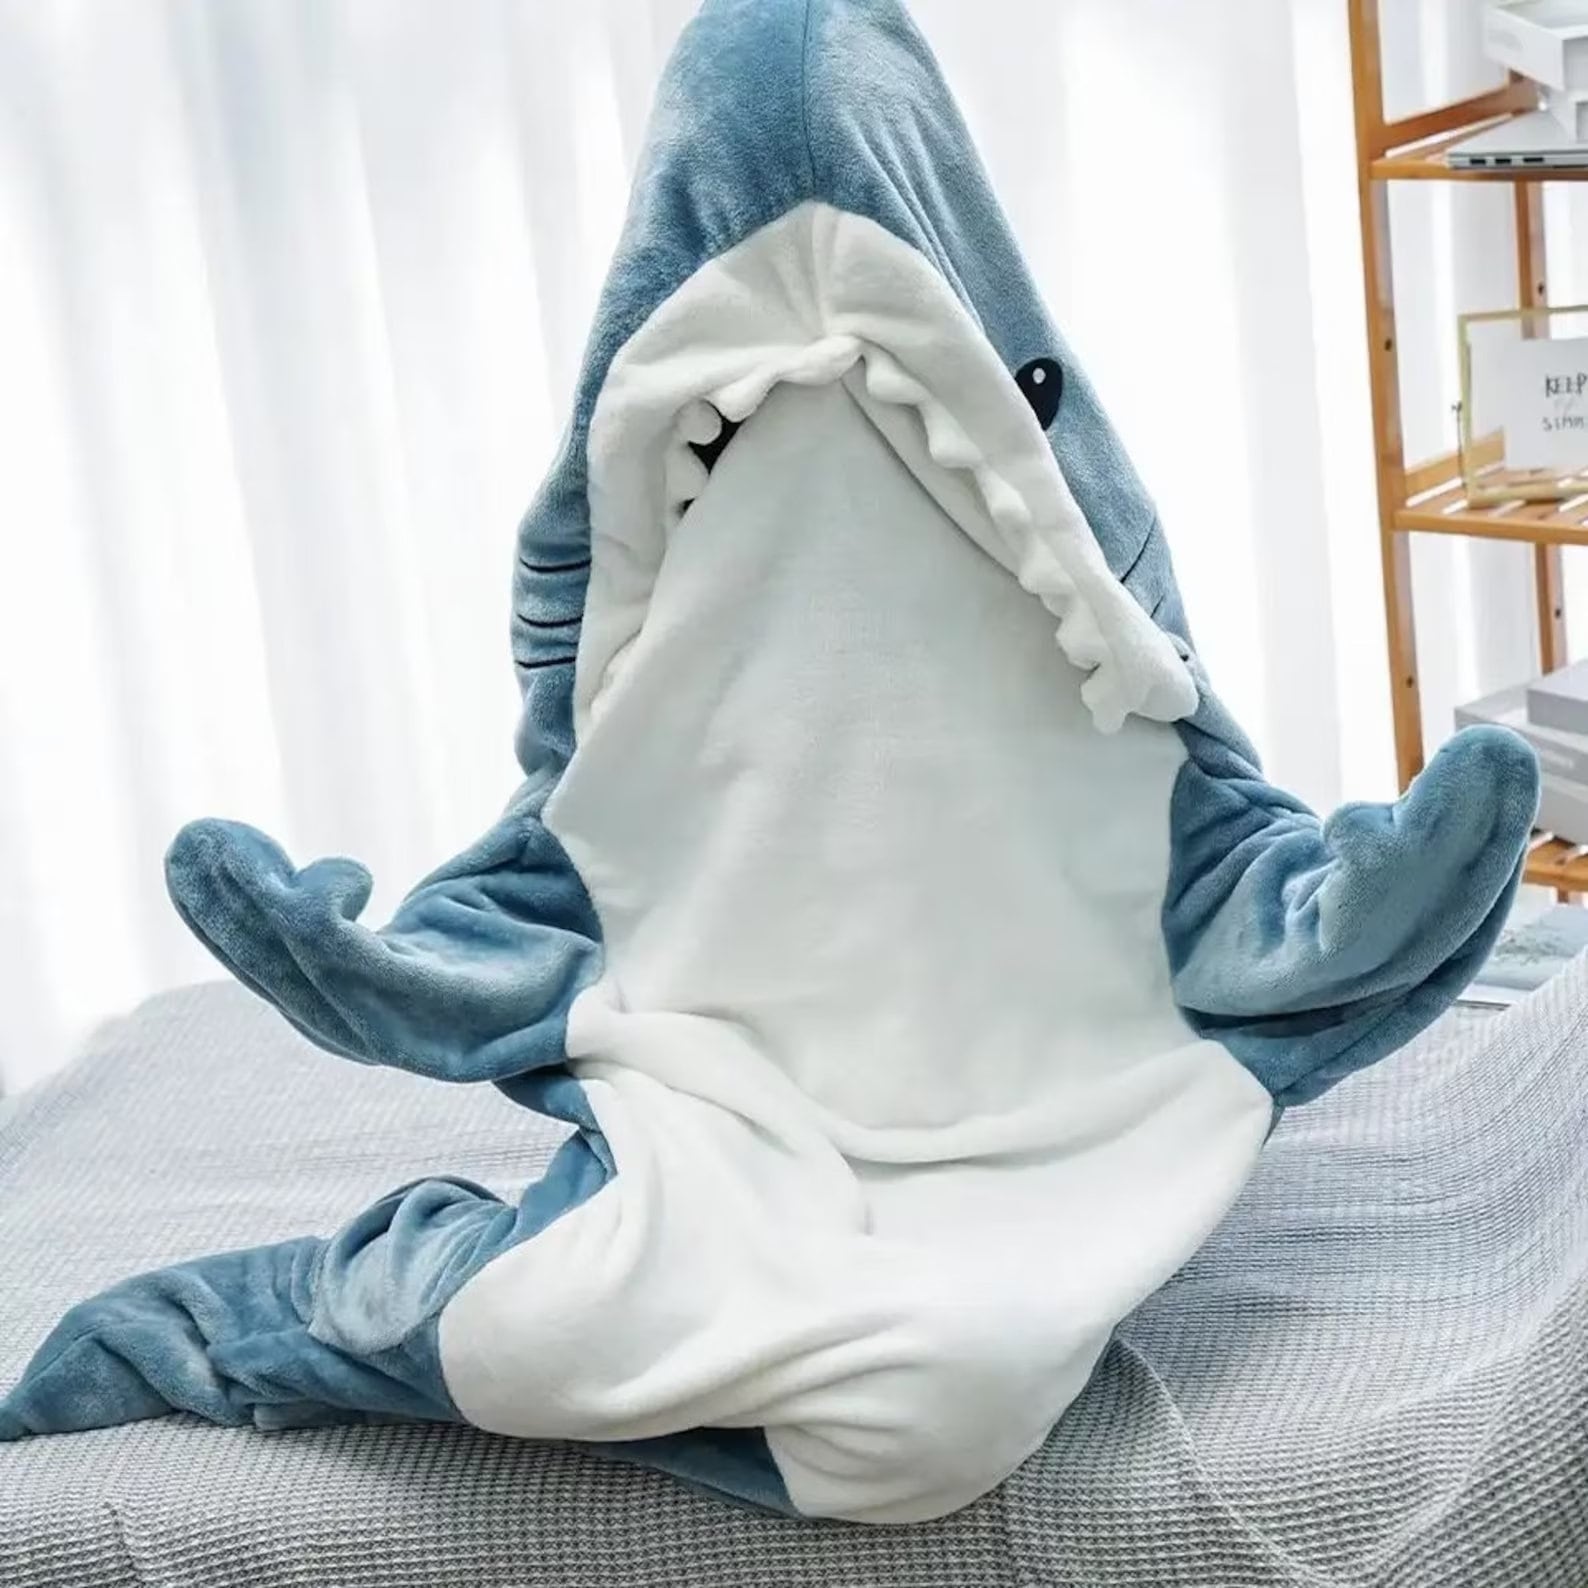 Pijama tiburon fotografías e imágenes de alta resolución - Alamy